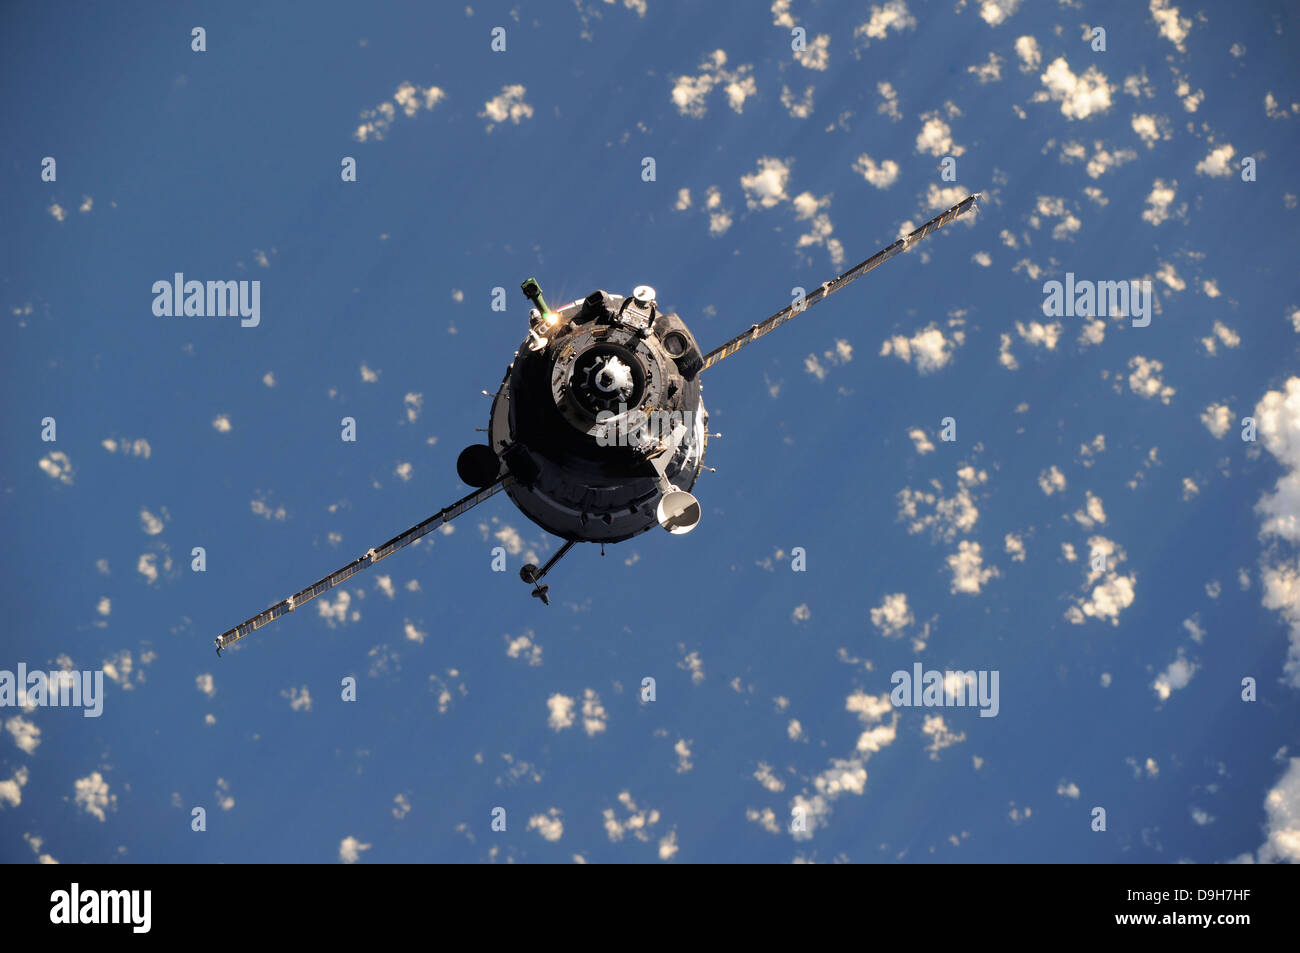 17 décembre 2010 - Le vaisseau Soyouz TMA-20 s'approche de la Station spatiale internationale. Banque D'Images